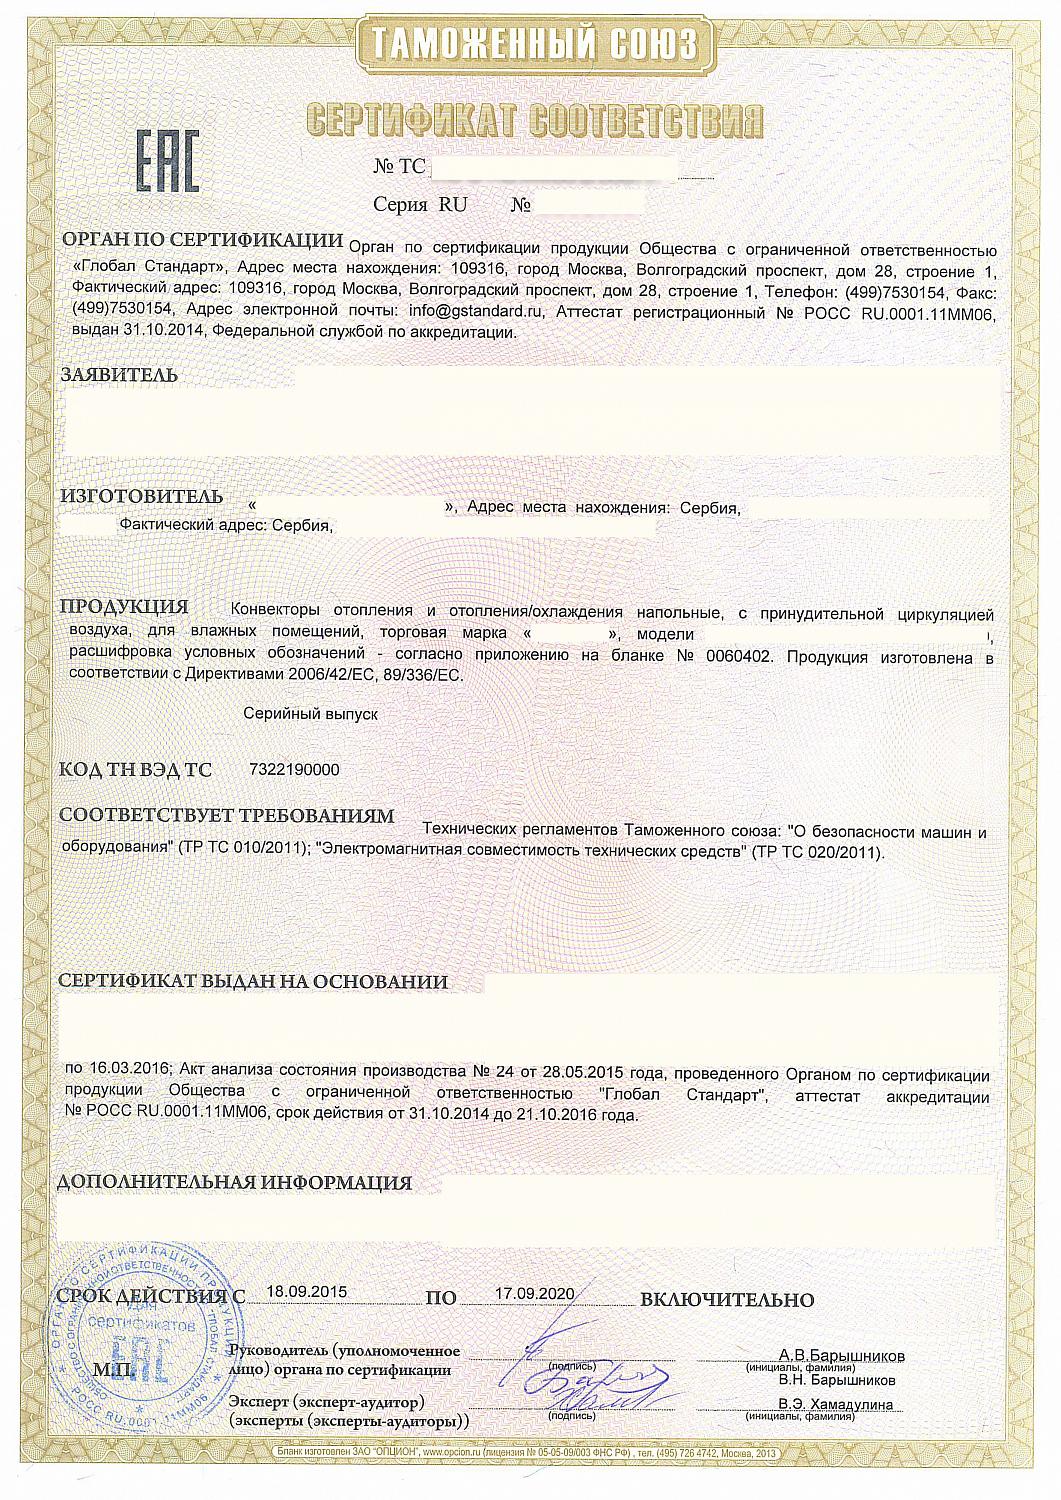 ТР ТС 020/2011 "Электромагнитная совместимость технических средств" 